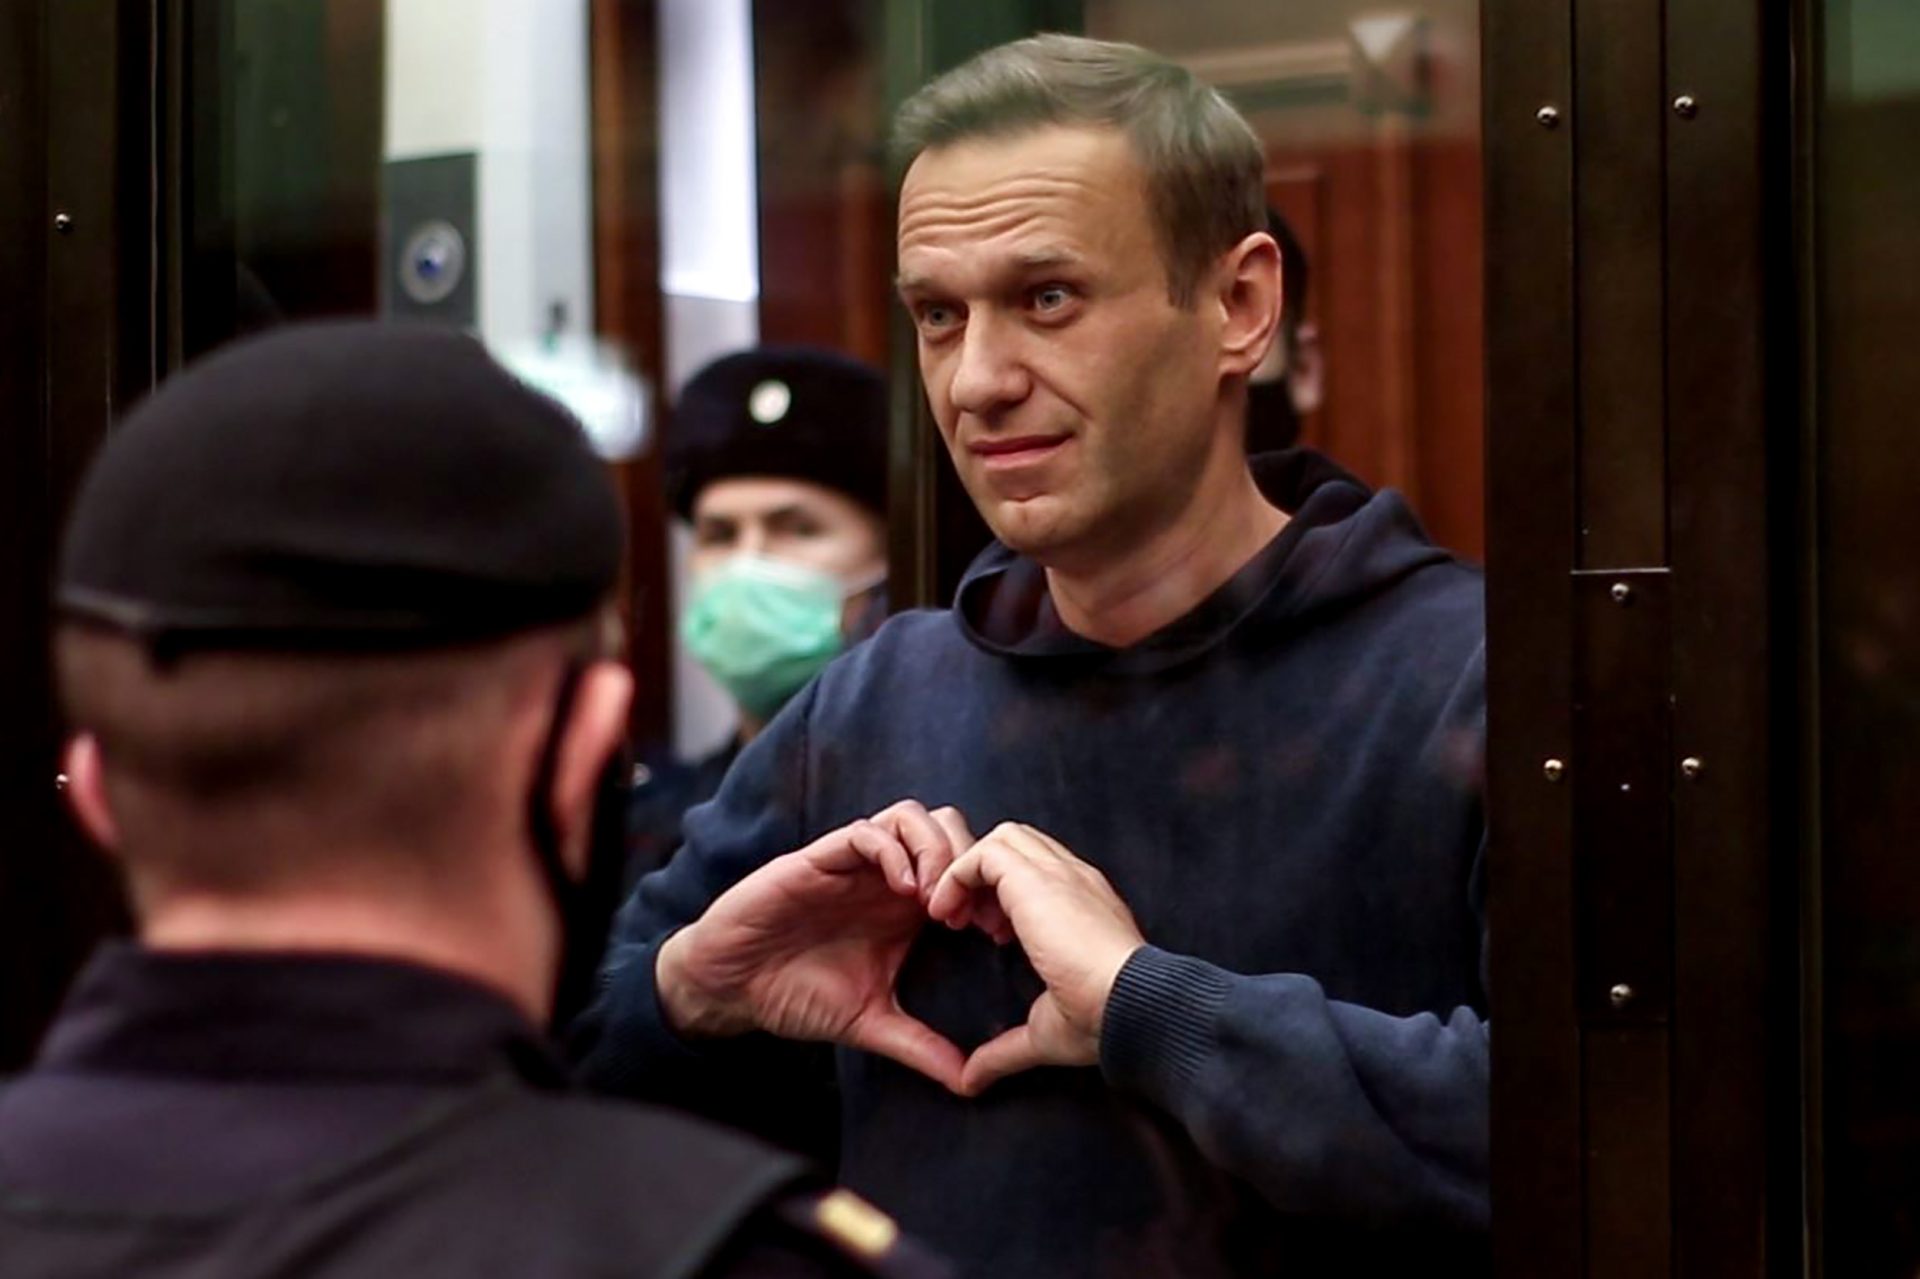 Rússia “sem intenção de levar em consideração” declarações de outros países sobre Navalny